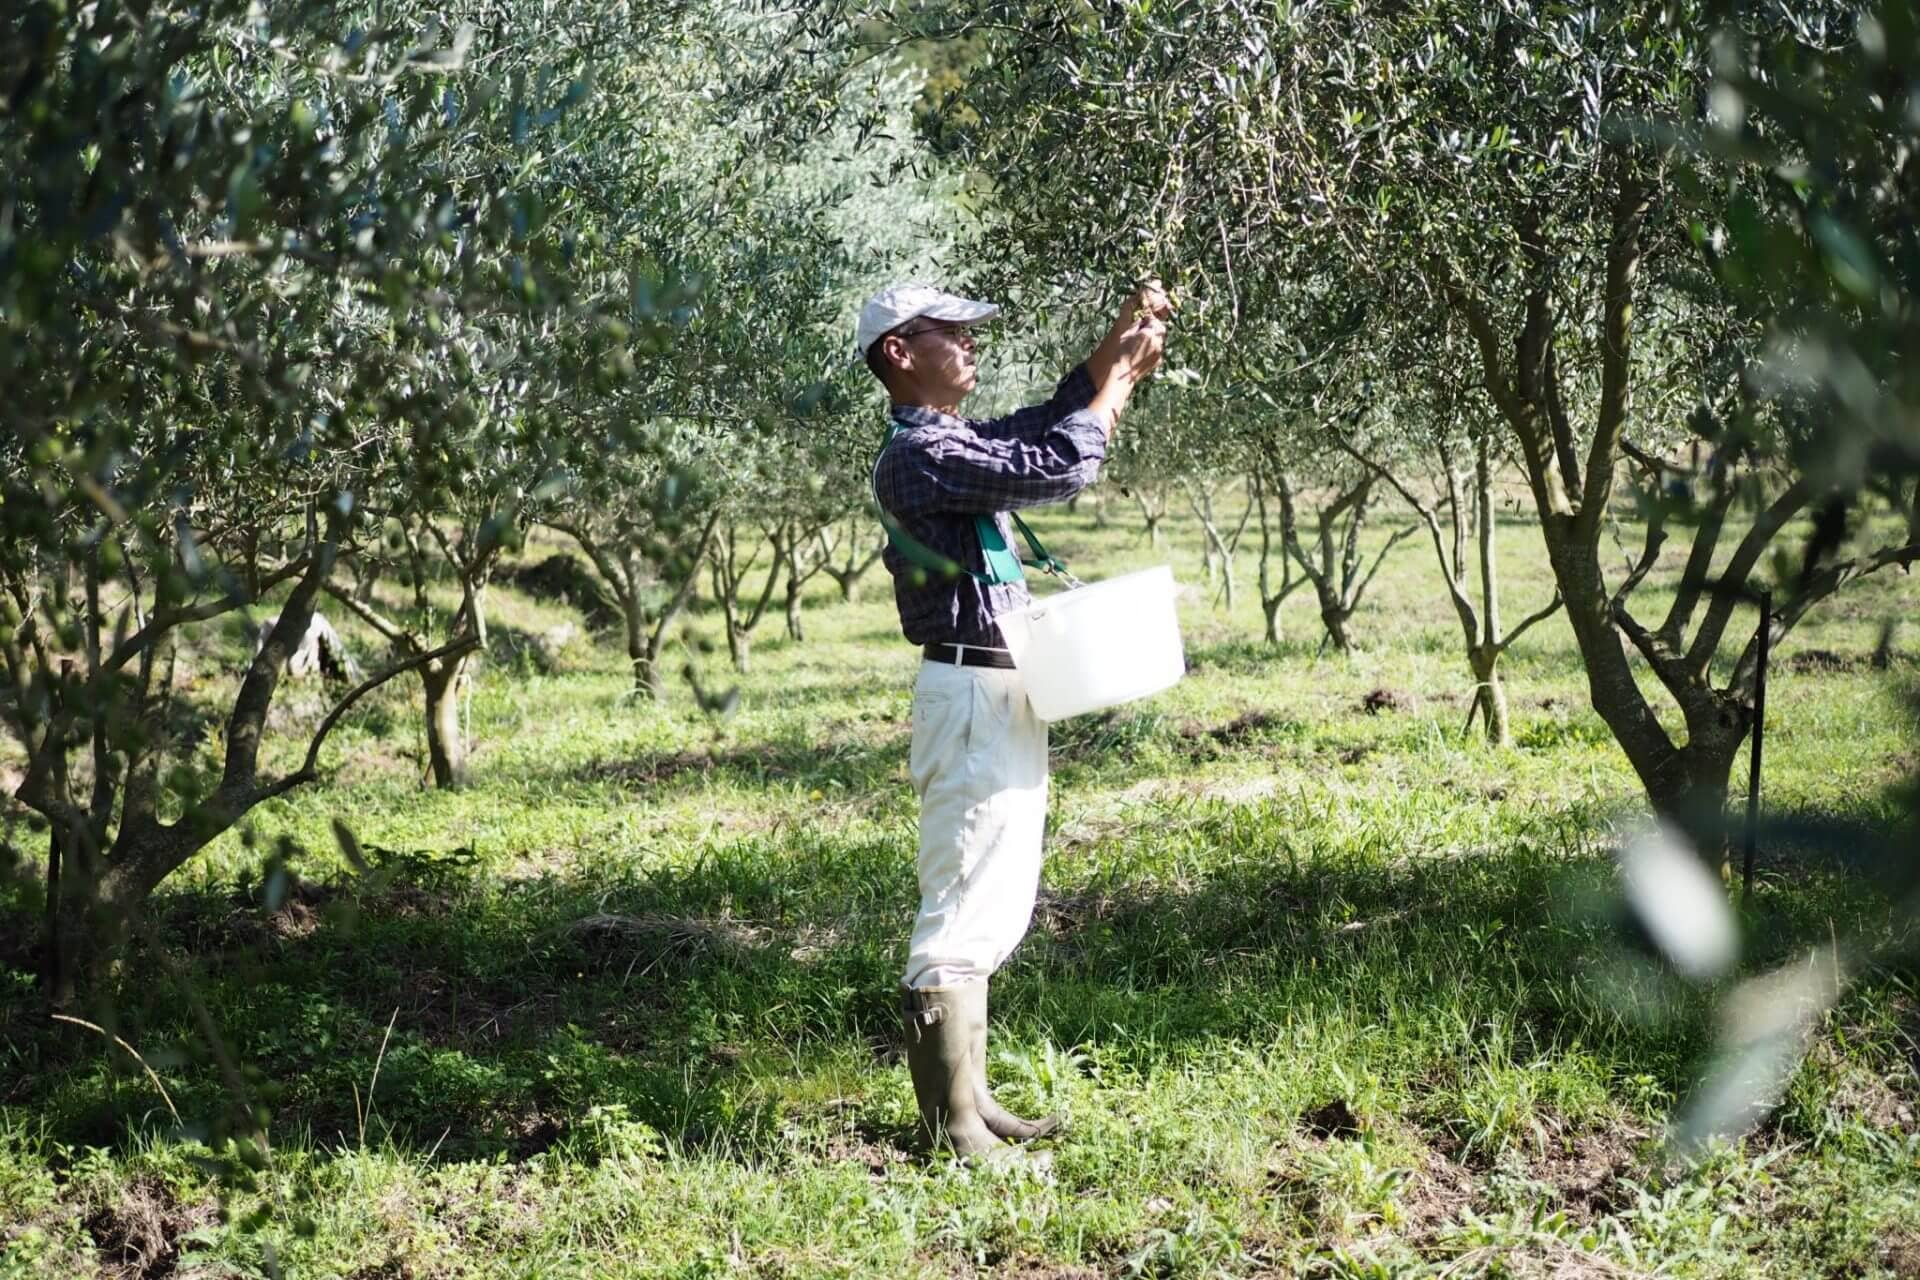 asia-the-best-olive-oils-tekmovanja-proizvodnja-na-japonskem-proizvajalci-reflect-on-an-awardwinning-year-olive-oil-times